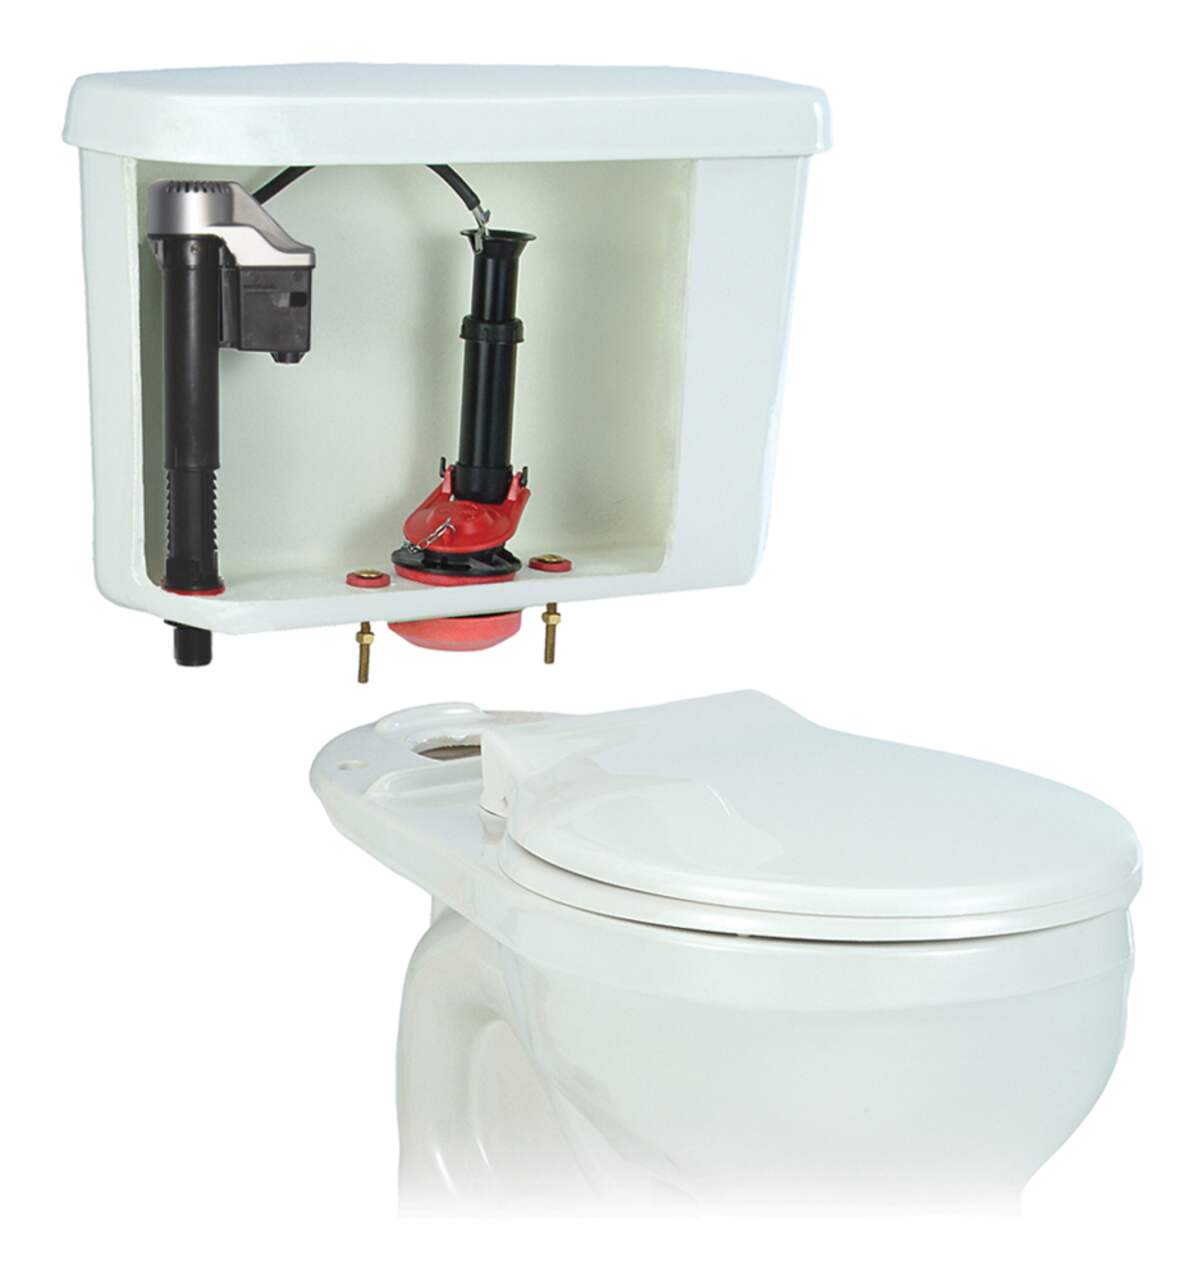 Toilet Repair Kits at